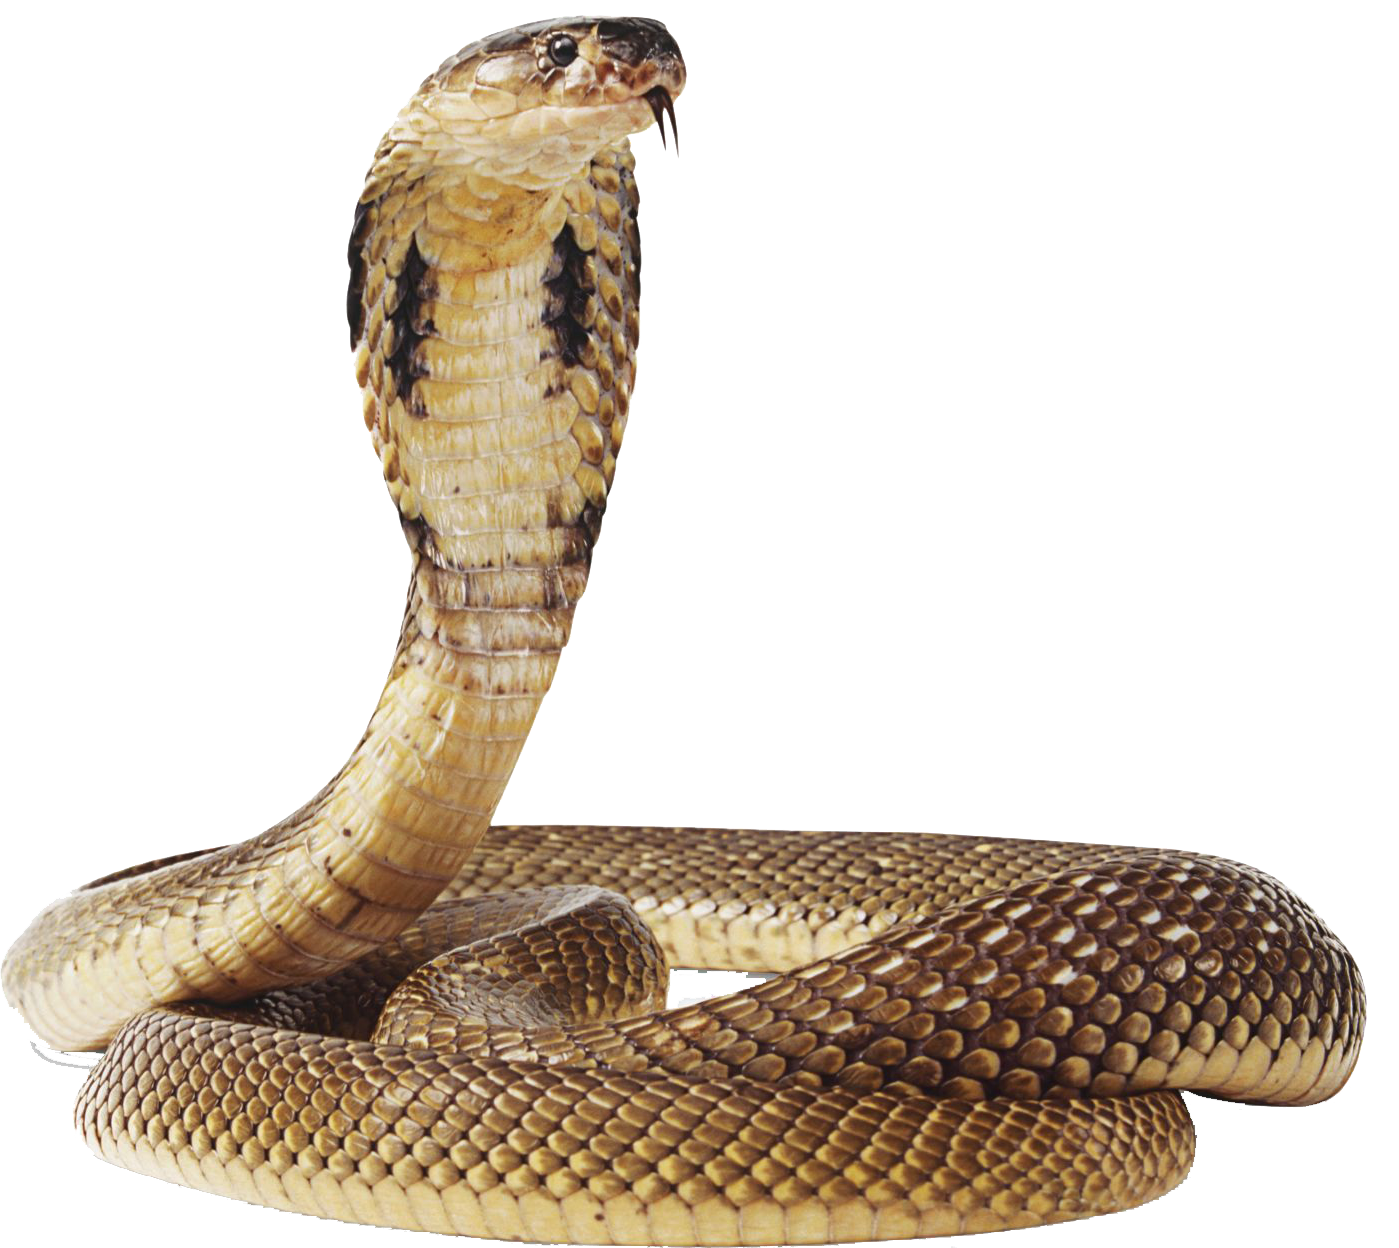 Cobra Snake Transparent Image PNG Image